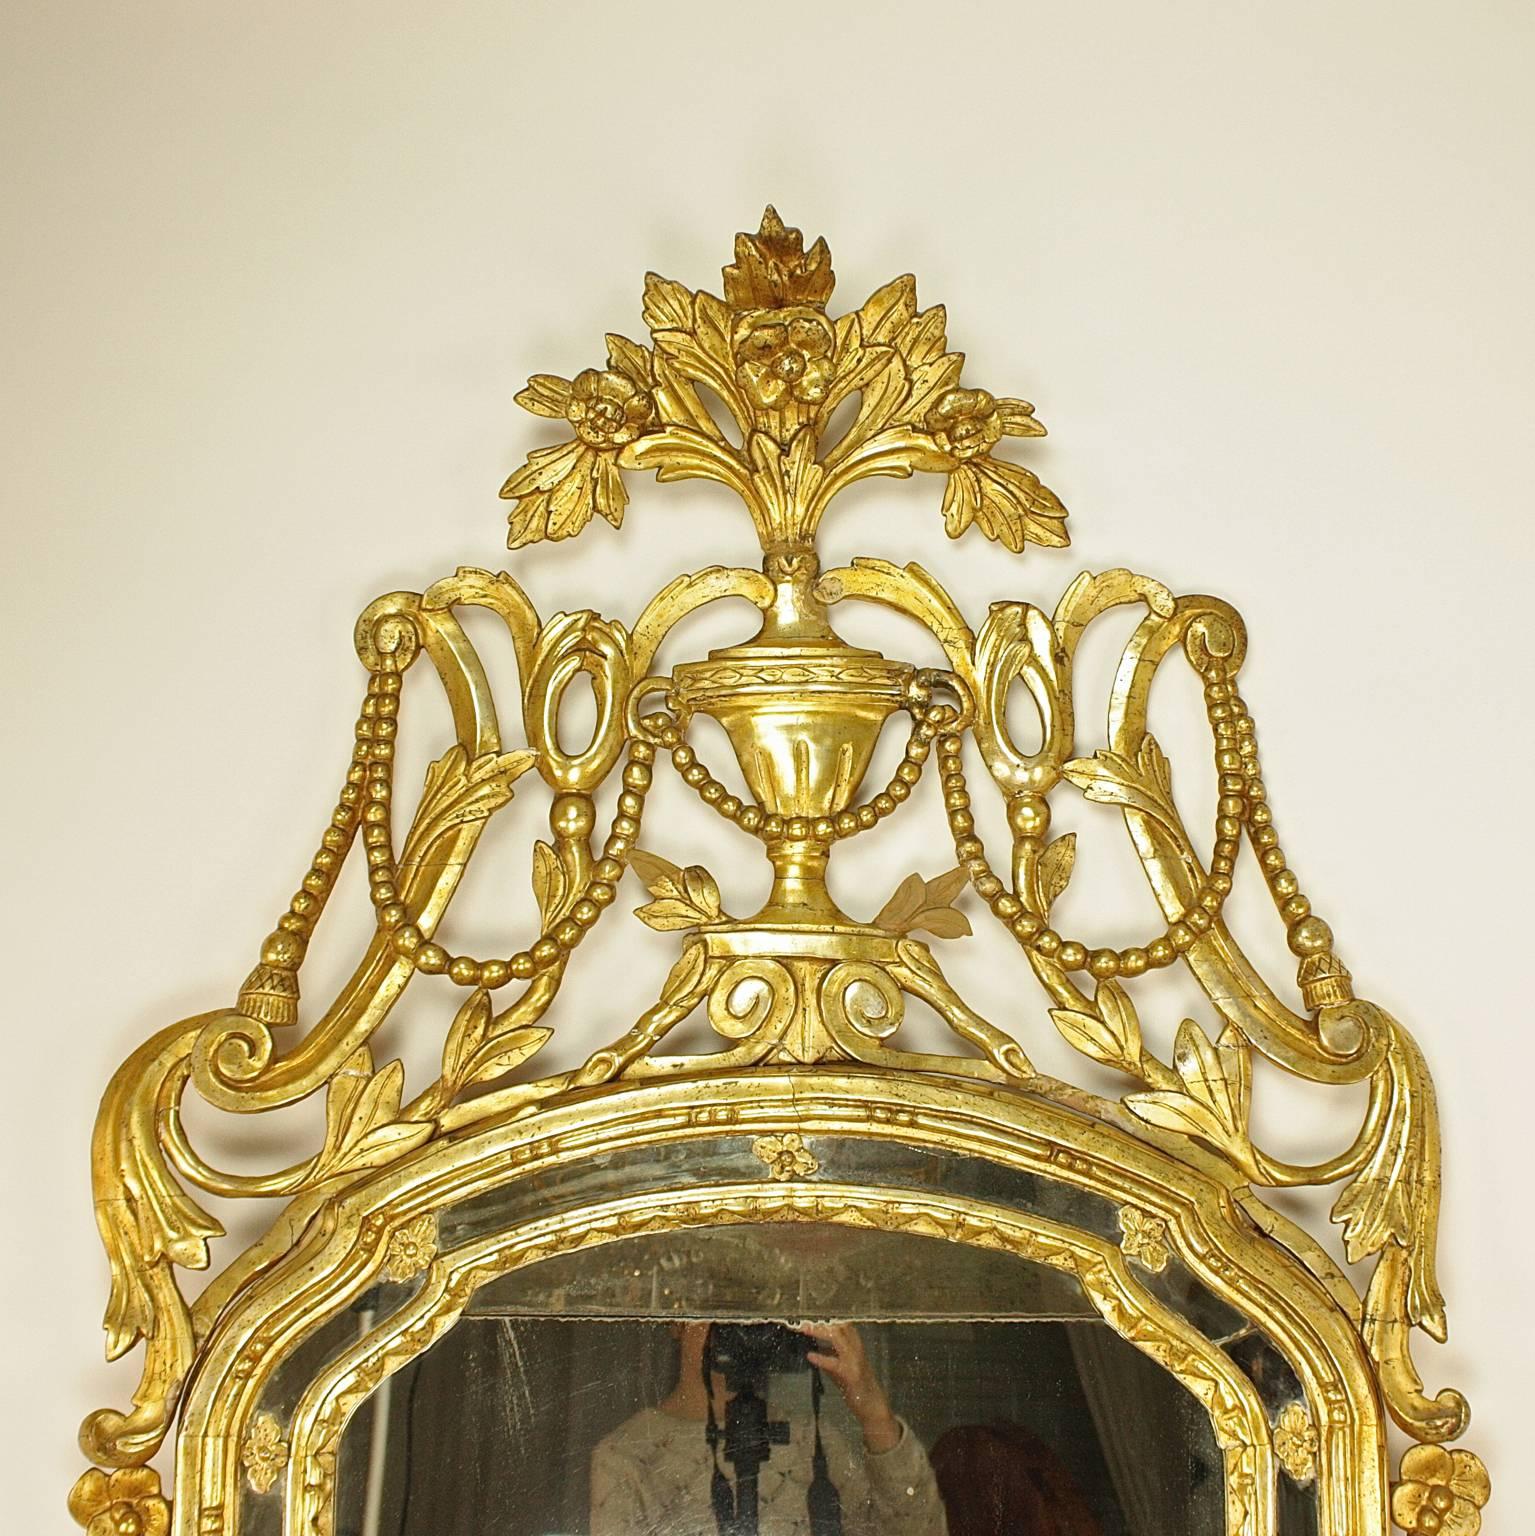 Große 18. Jahrhundert Italienisch Seil & Quasten Dekoration geschnitzt Giltwood Spiegel

Ein großer und hervorragend geschnitzter Spiegel aus vergoldetem Holz des 18. Jahrhunderts mit einer gewölbten Platte in einem geformten Rahmen und mit einem